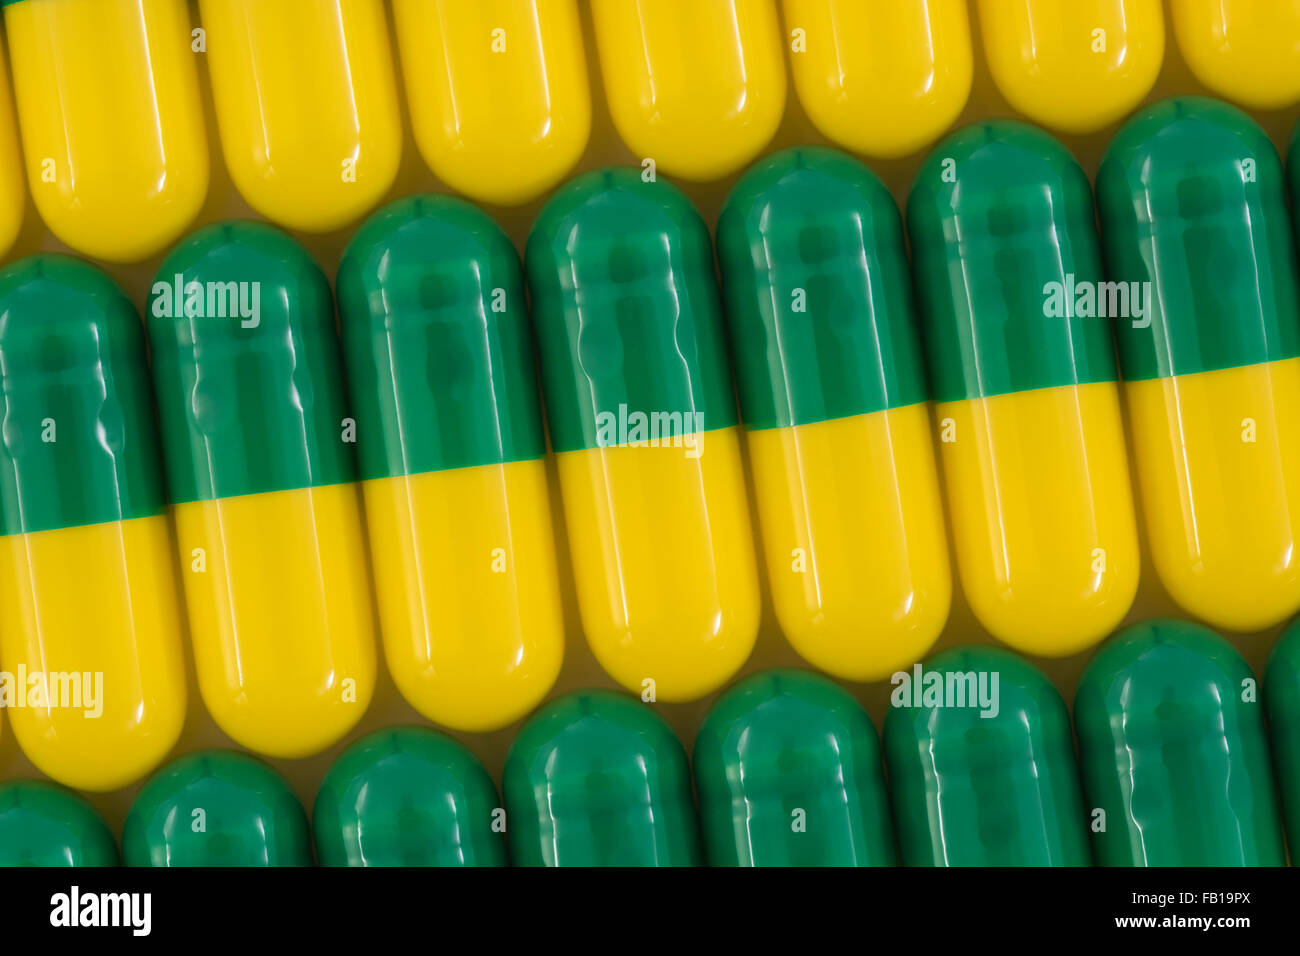 Primer plano de pastillas - forma de cápsula hecha de gelatina. Pastillas verdes / amarillas. Metáfora tomando a las compañías farmacéuticas estadounidenses sobre los altos precios de los medicamentos, ensayos de drogas. Foto de stock